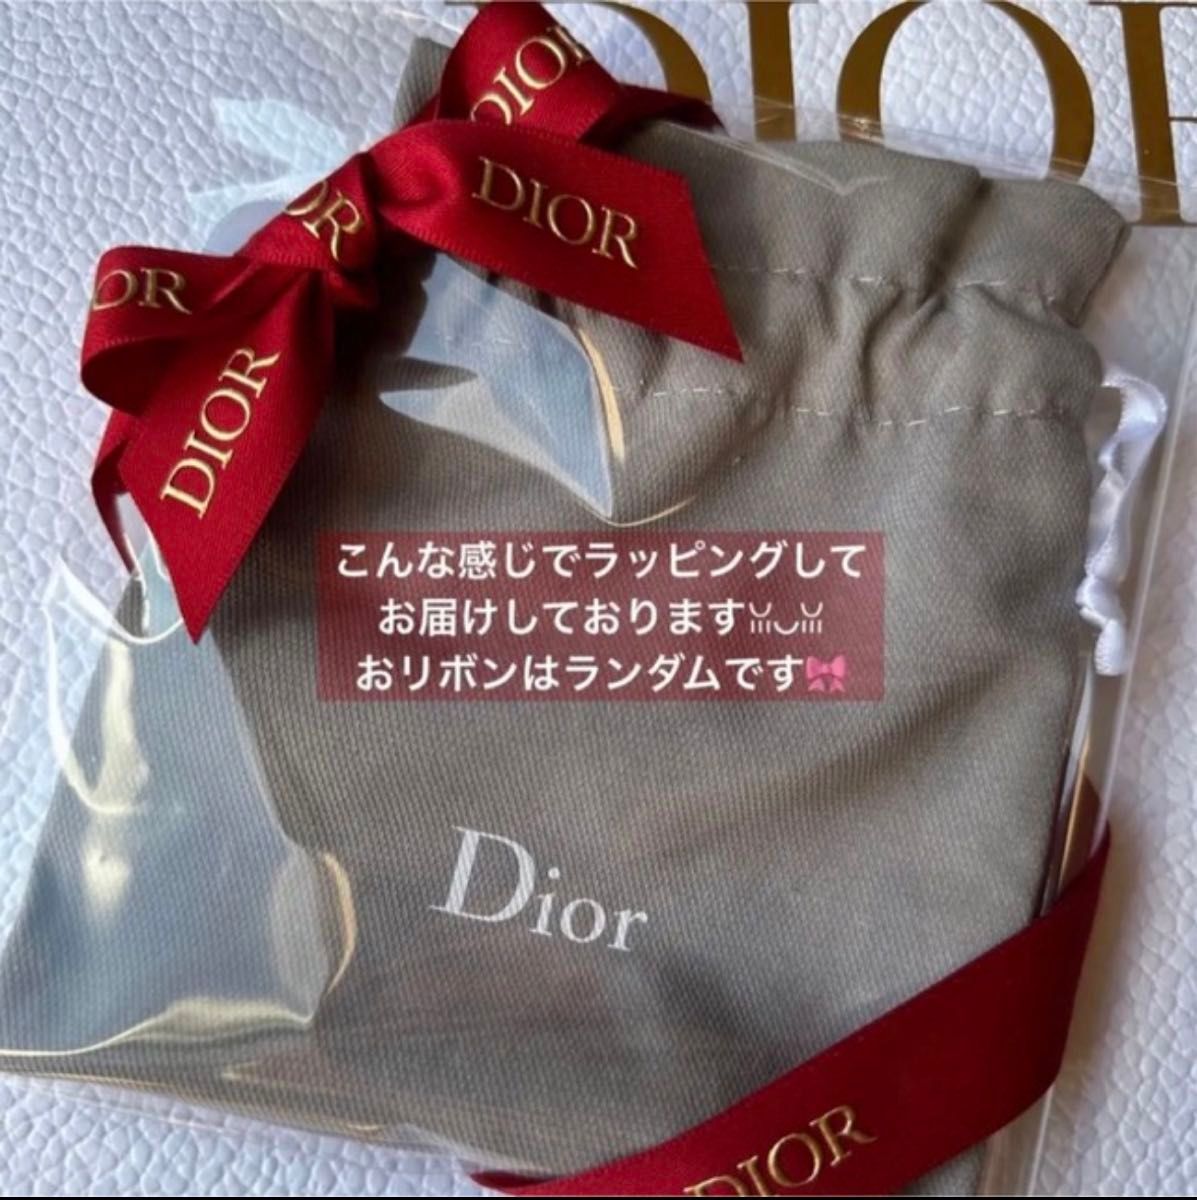 1点 巾着袋 大人気希少 Dior ホワイトロゴ入りグレー